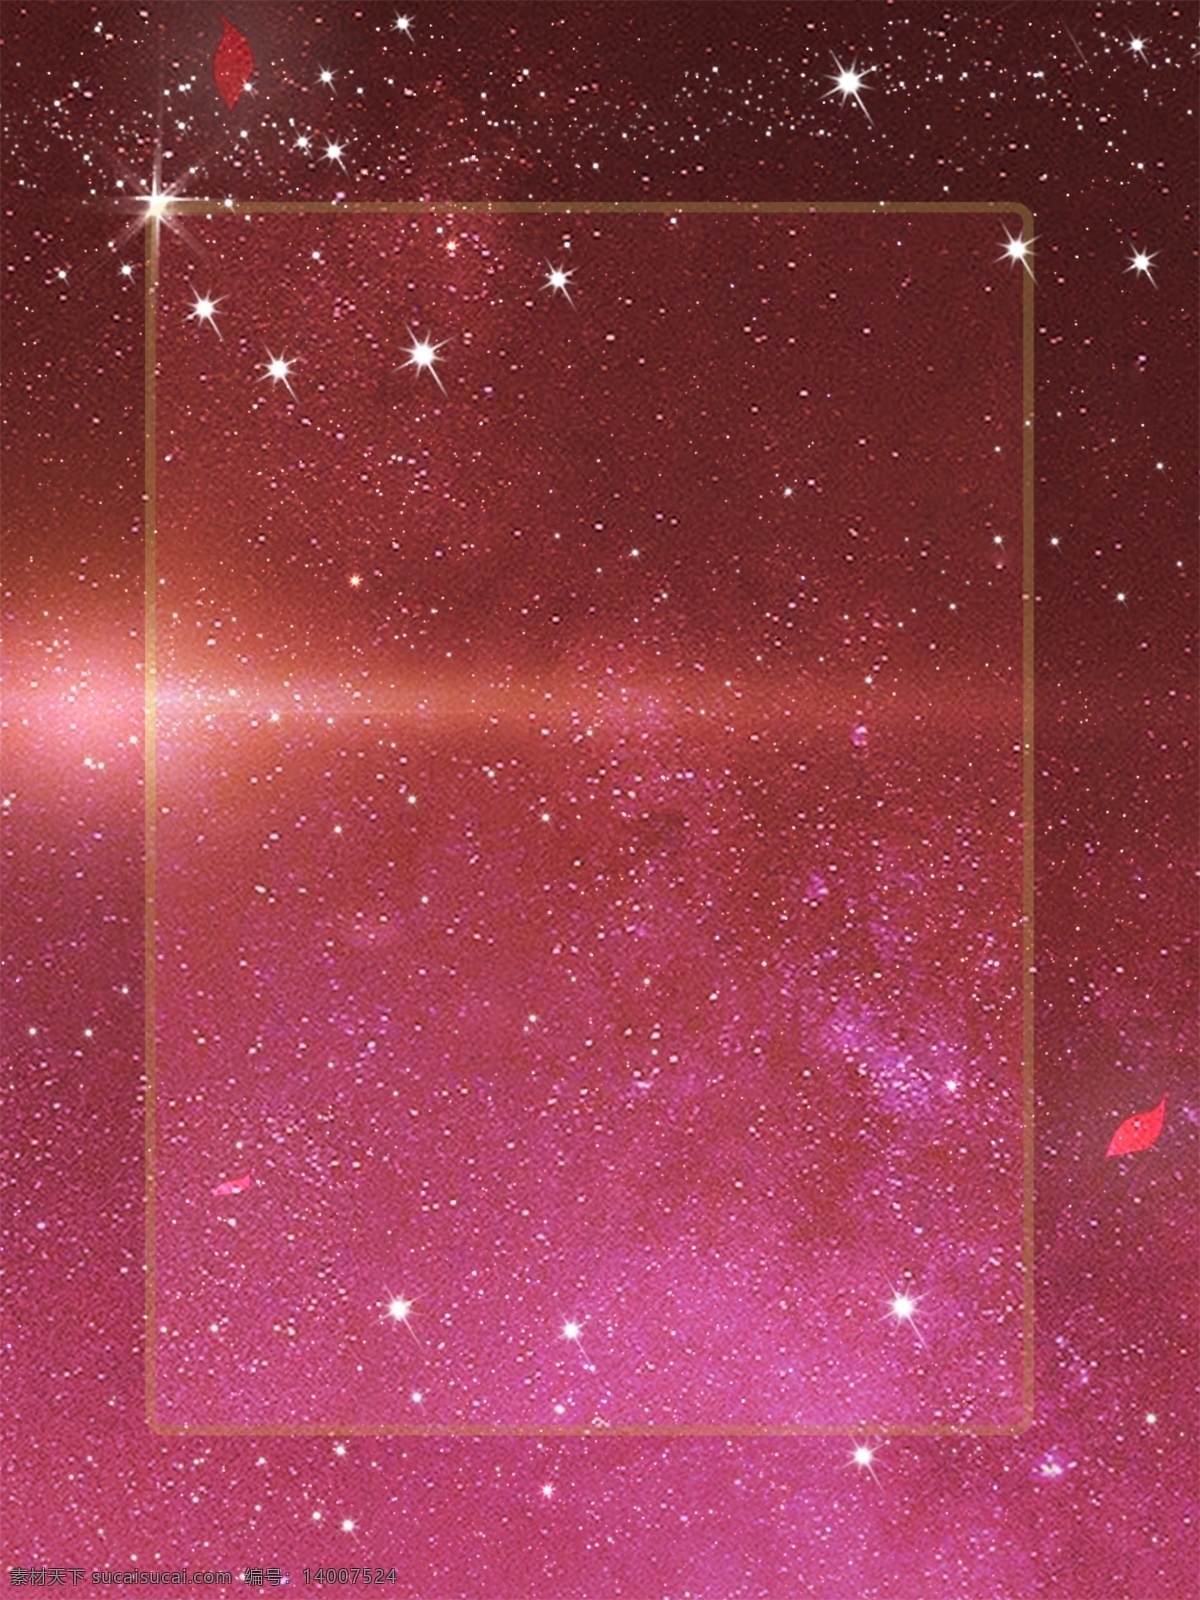 暗红色 星空 系列 简约 唯美 星河 梦幻 原创 背景 星光 商务背景 原创背景 唯美风格